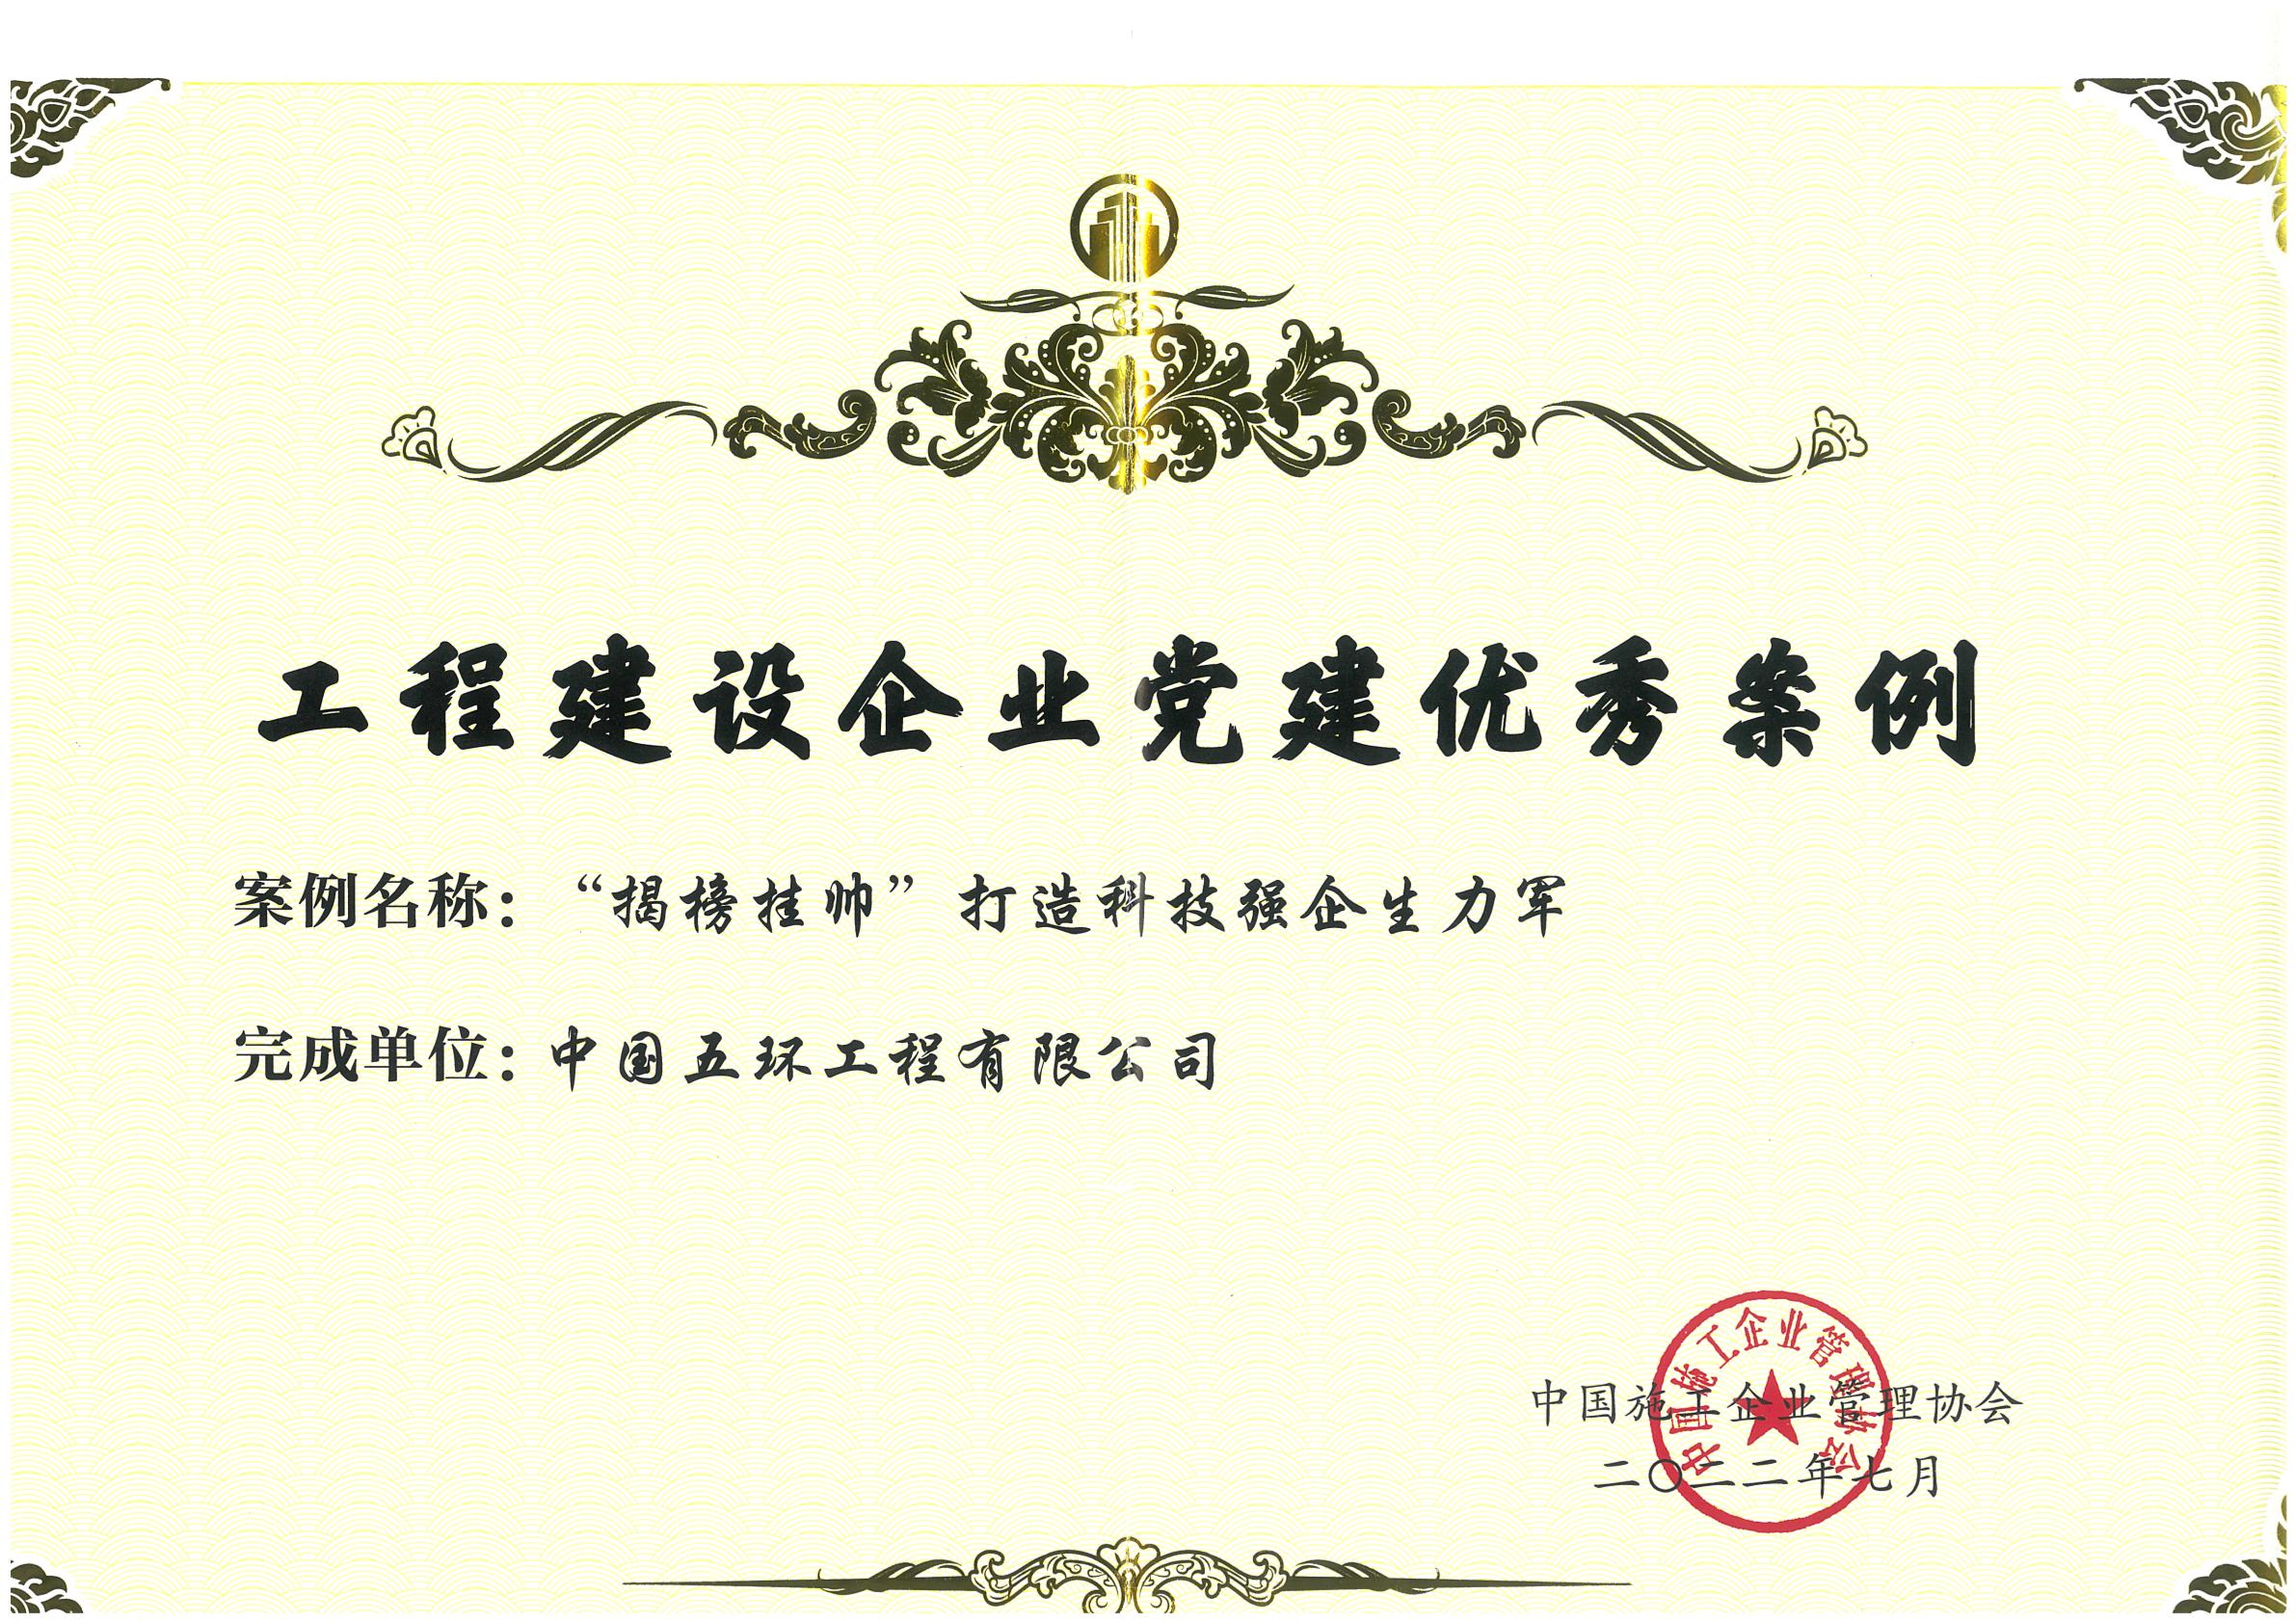 01 中国施工企业管理协会 工程建设企业党建优秀案例证书-1.jpg